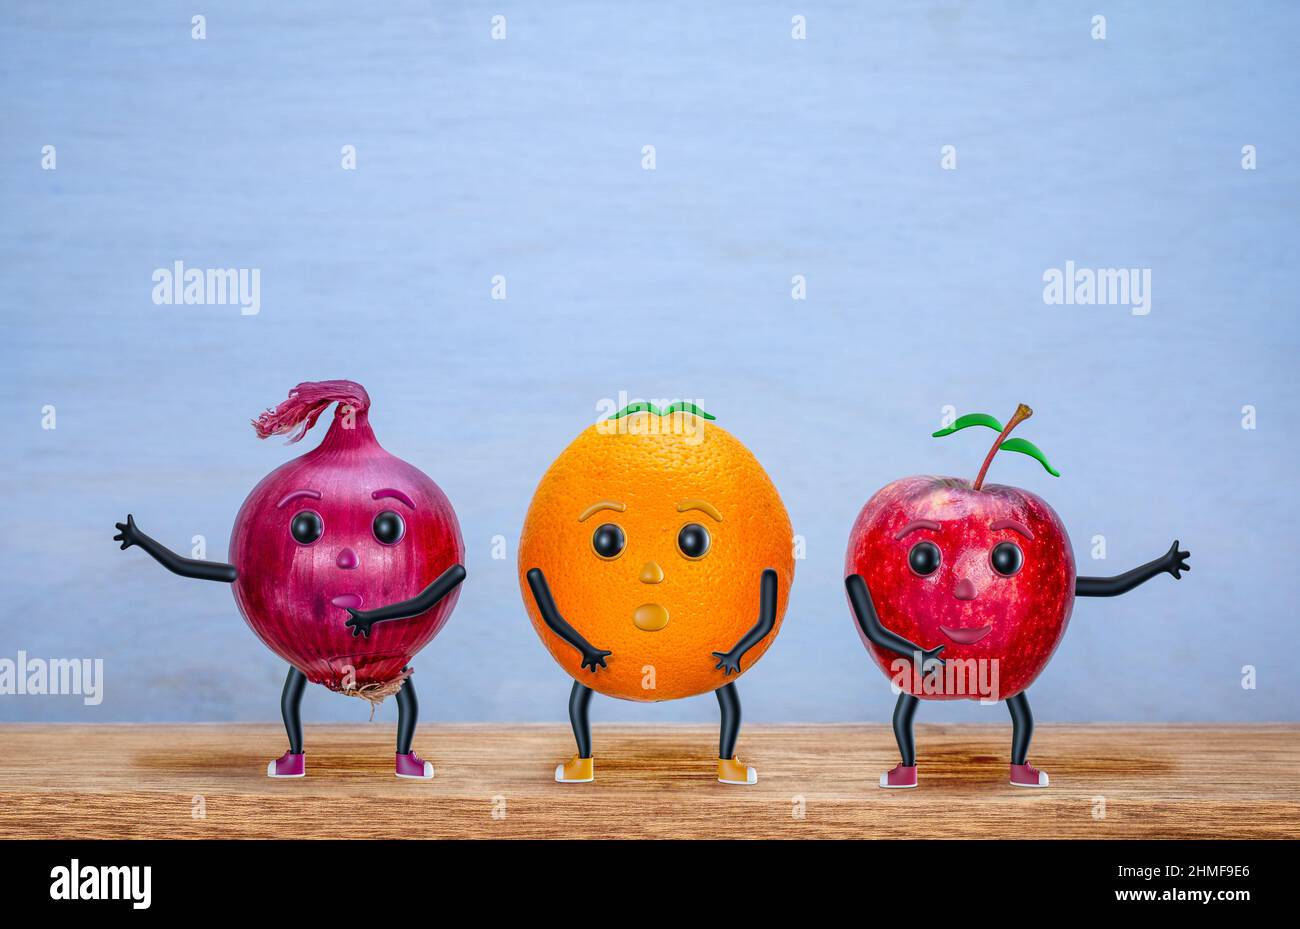 Baile de manzana, naranja y cebolla, personajes, feliz, divertido concepto de verduras y frutas, con espacio de copia Foto de stock